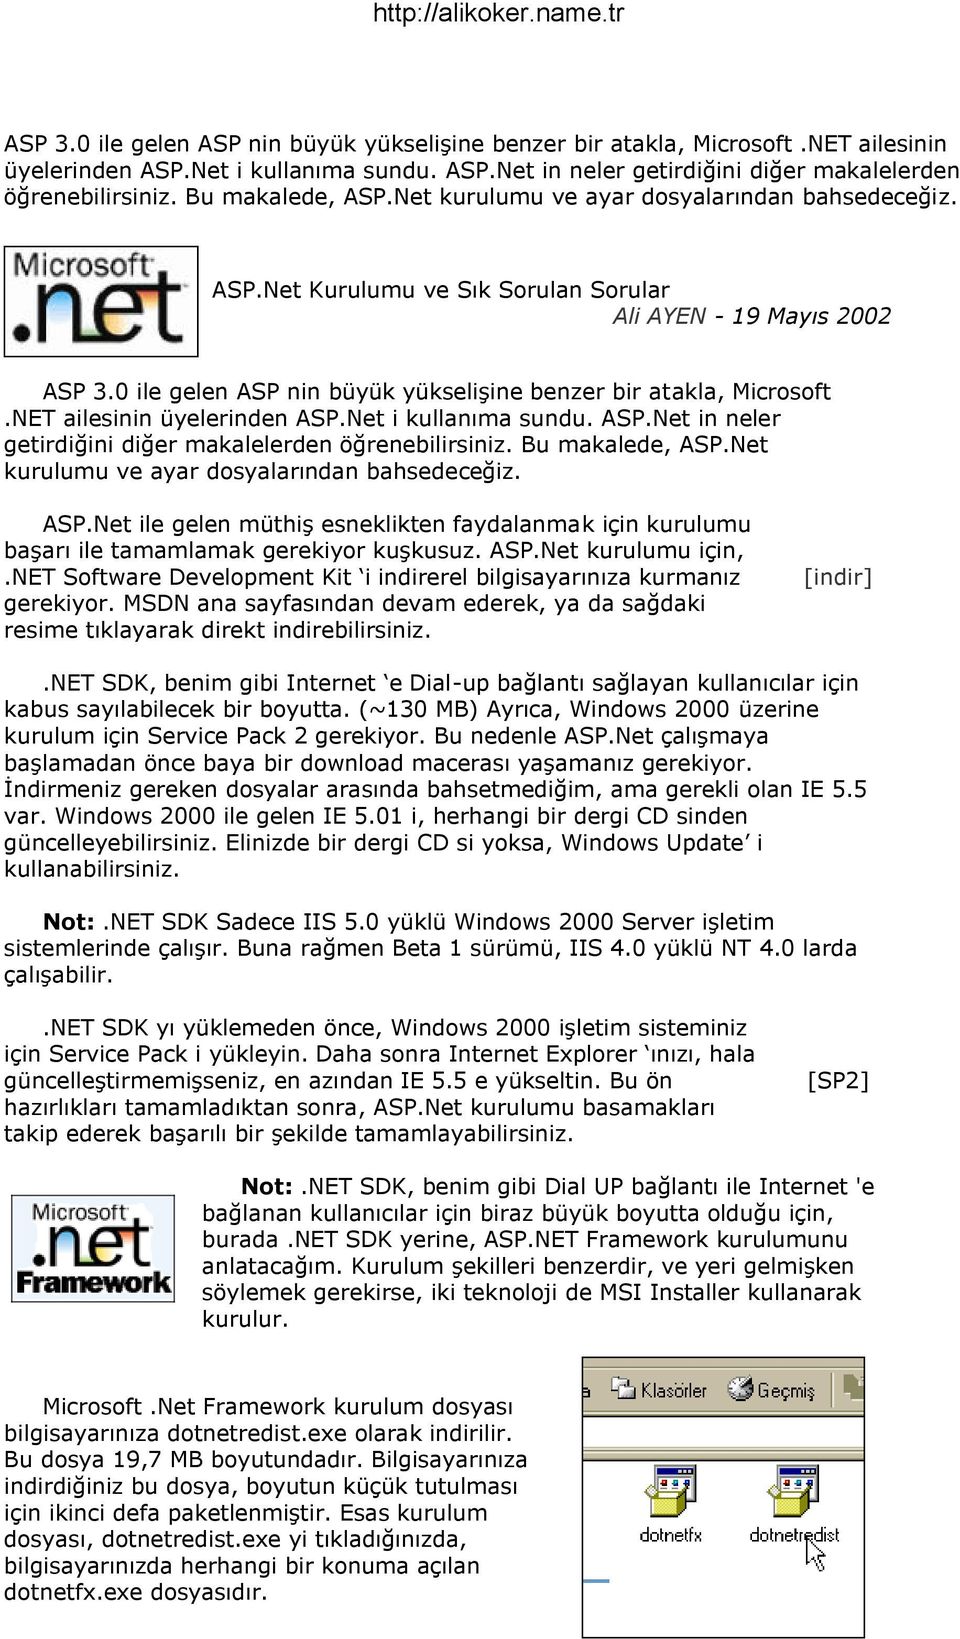 ASP.Net kurulumu için,.net Software Development Kit i indirerel bilgisayarınıza kurmanız gerekiyor. MSDN ana sayfasından devam ederek, ya da sağdaki resime tıklayarak direkt indirebilirsiniz. [indir].